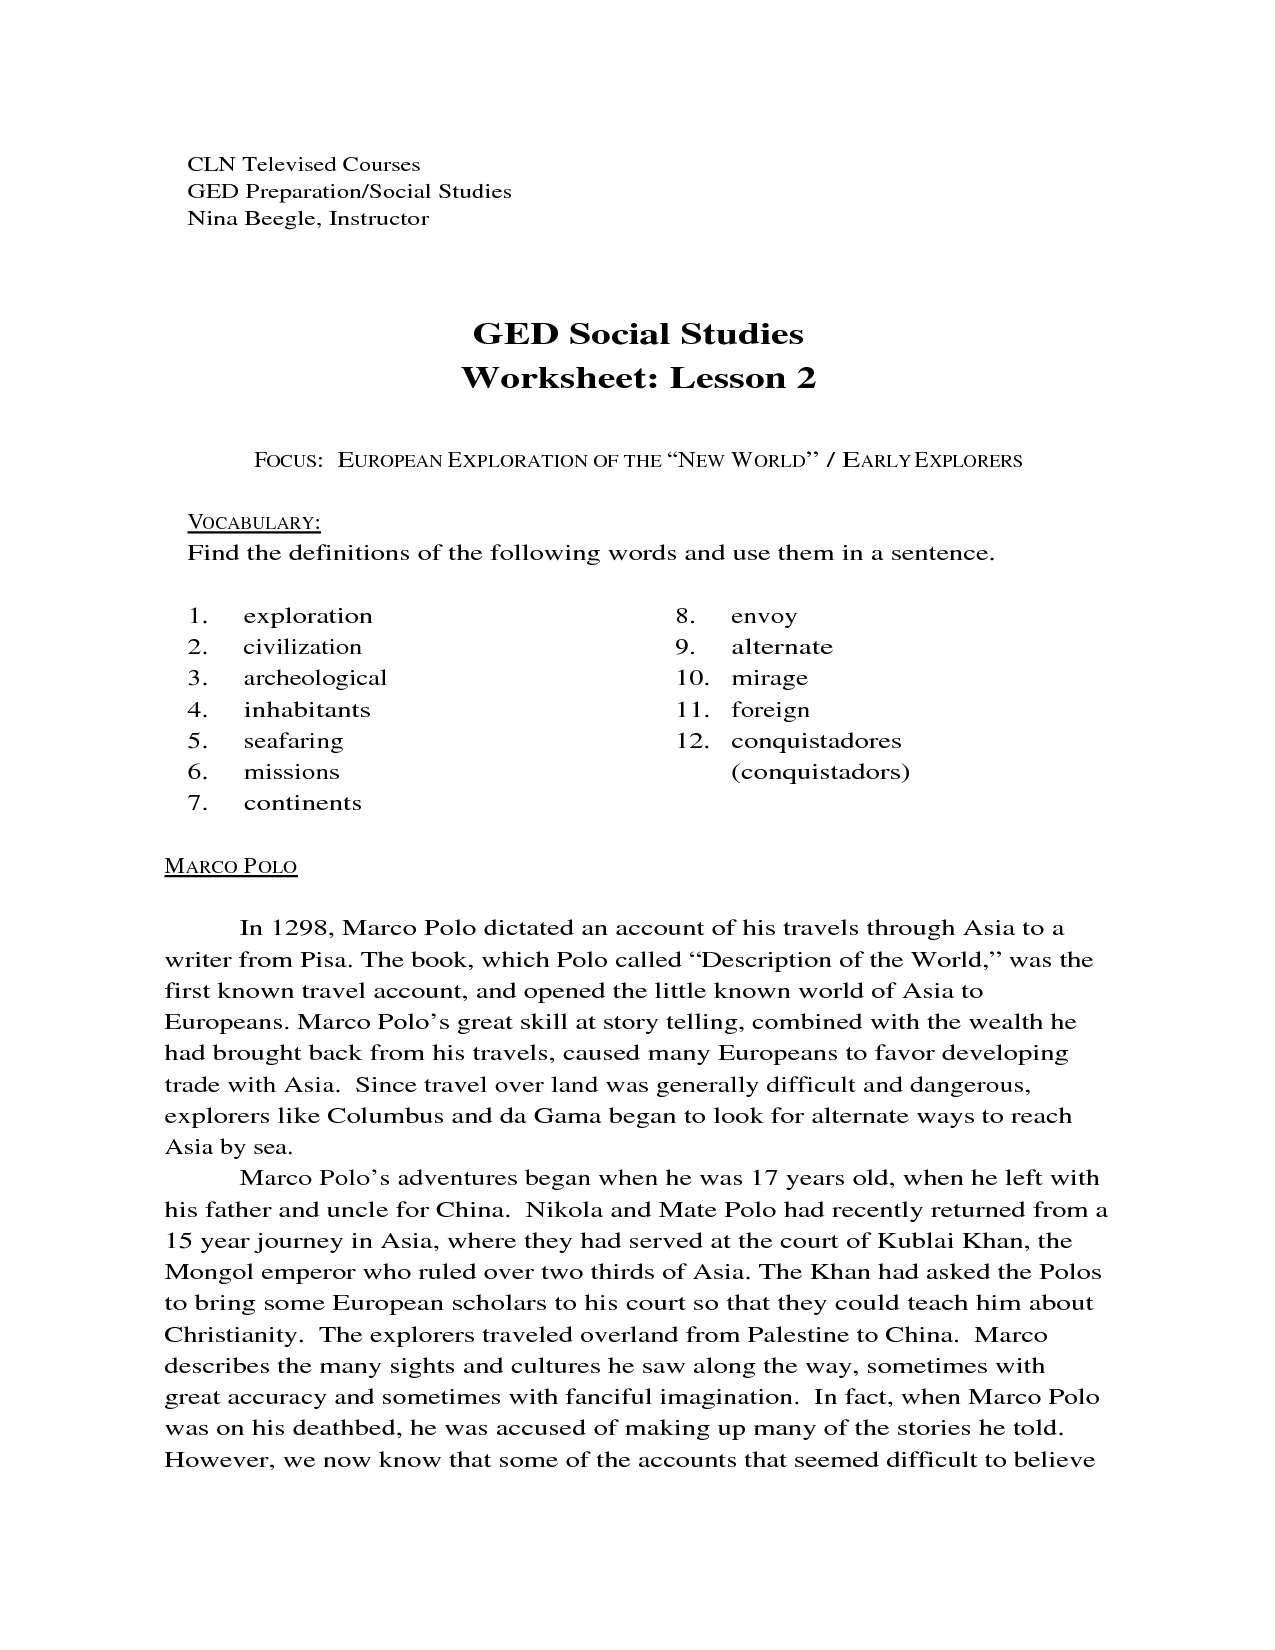 GED Social Studies Printable Worksheets Image